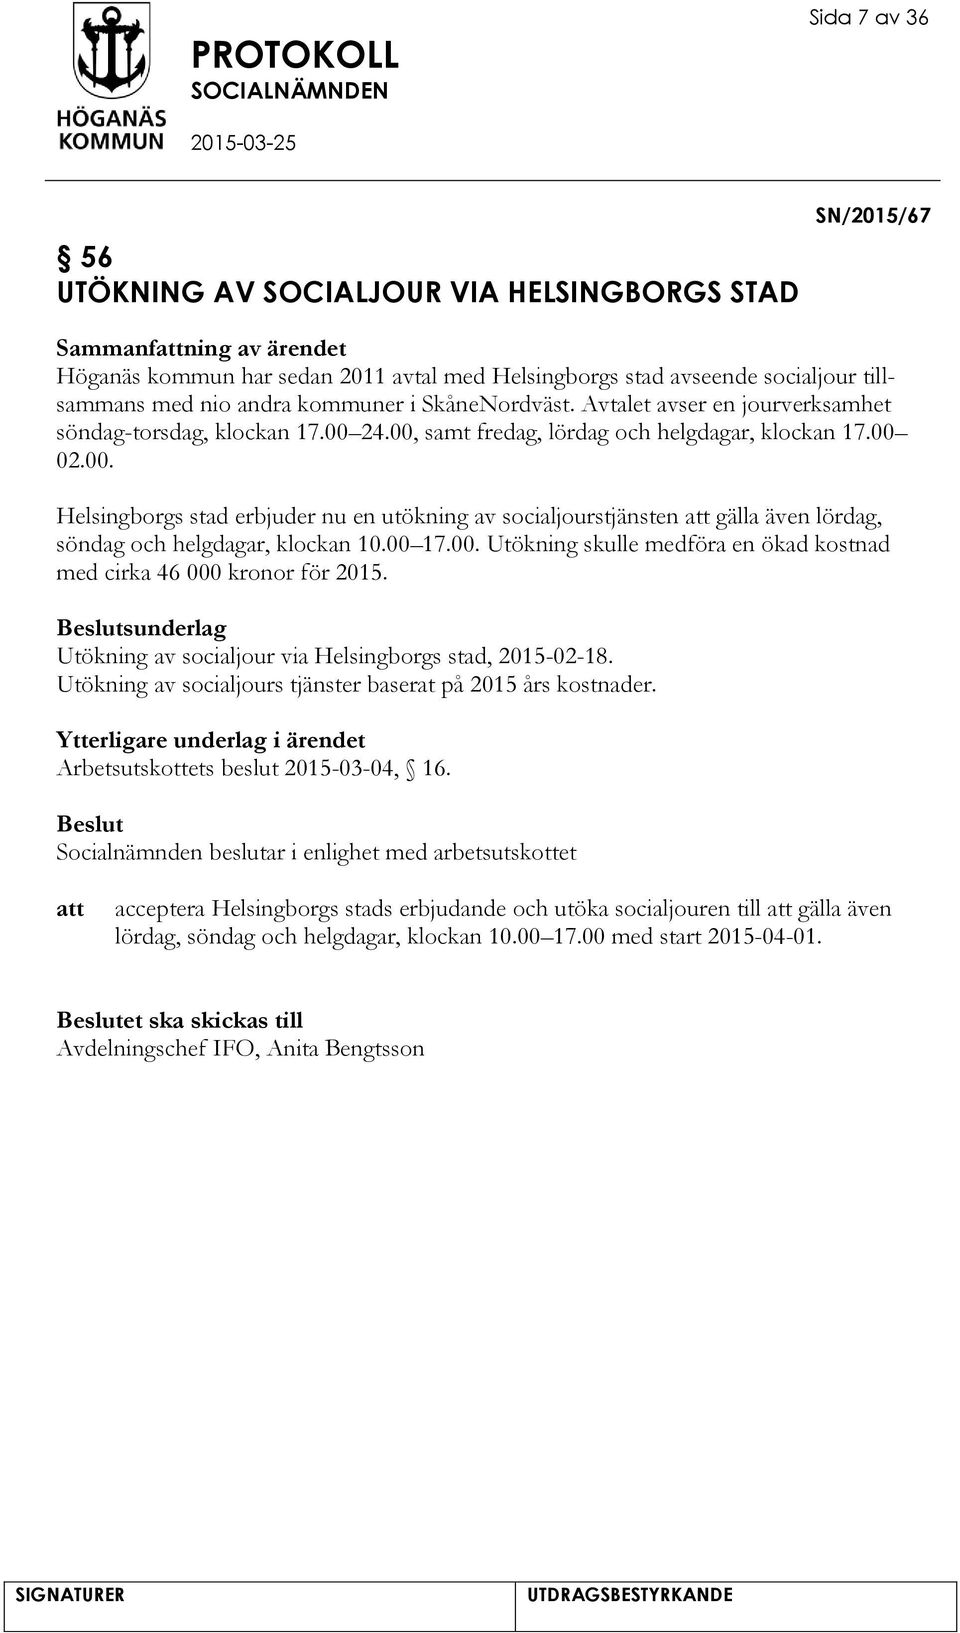 24.00, samt fredag, lördag och helgdagar, klockan 17.00 02.00. Helsingborgs stad erbjuder nu en utökning av socialjourstjänsten gälla även lördag, söndag och helgdagar, klockan 10.00 17.00. Utökning skulle medföra en ökad kostnad med cirka 46 000 kronor för 2015.